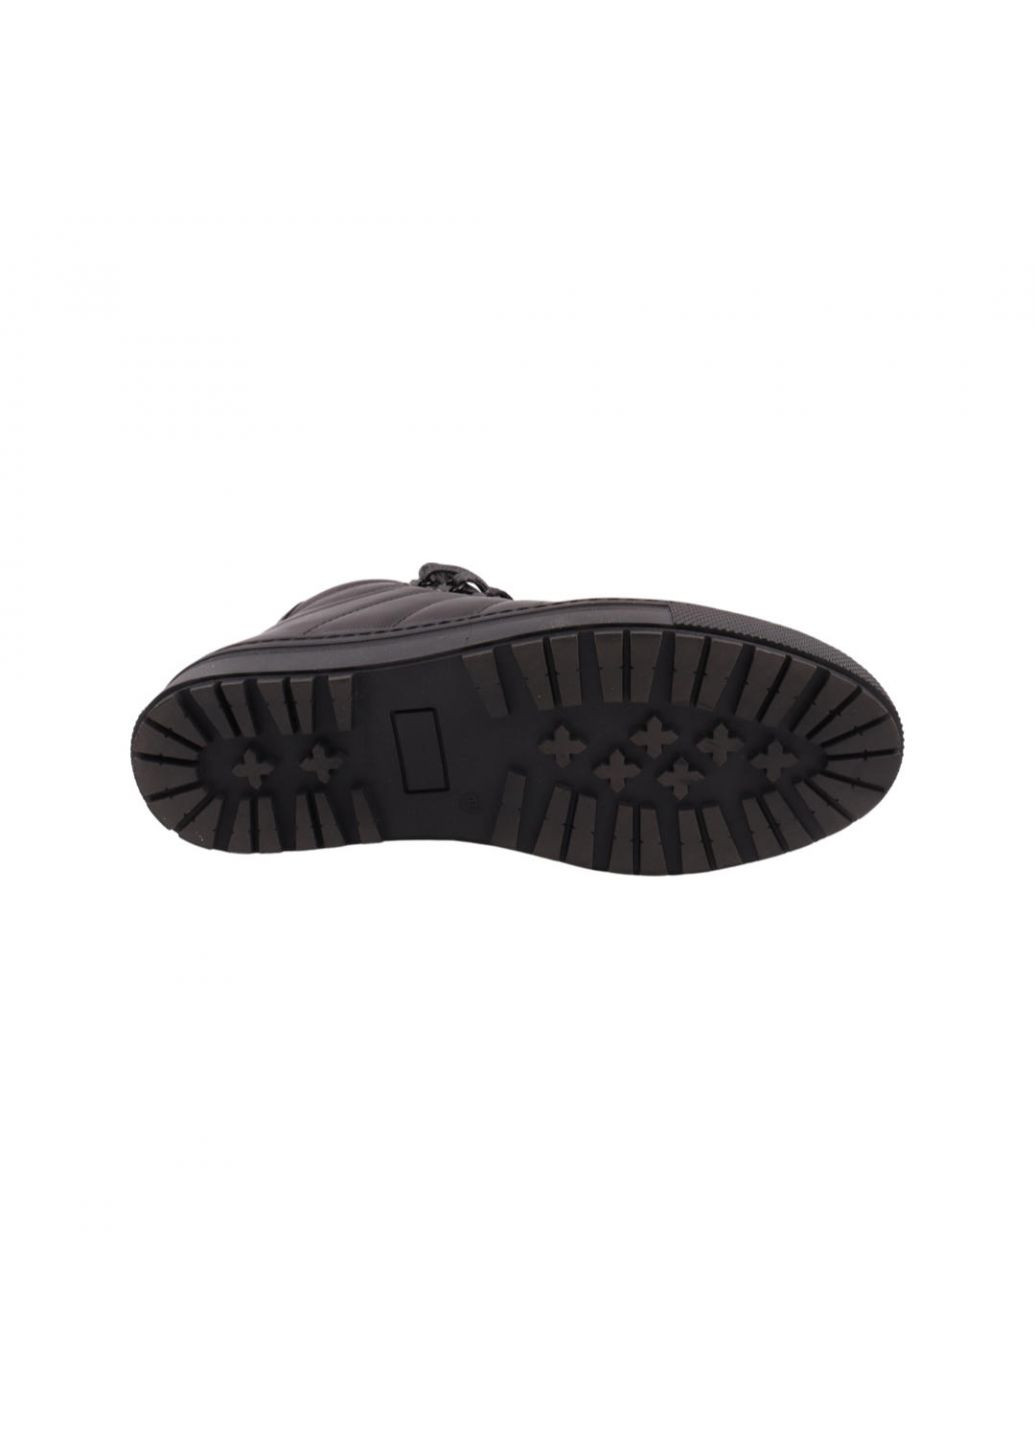 Черные ботинки мужские черные натуральная кожа Rondo